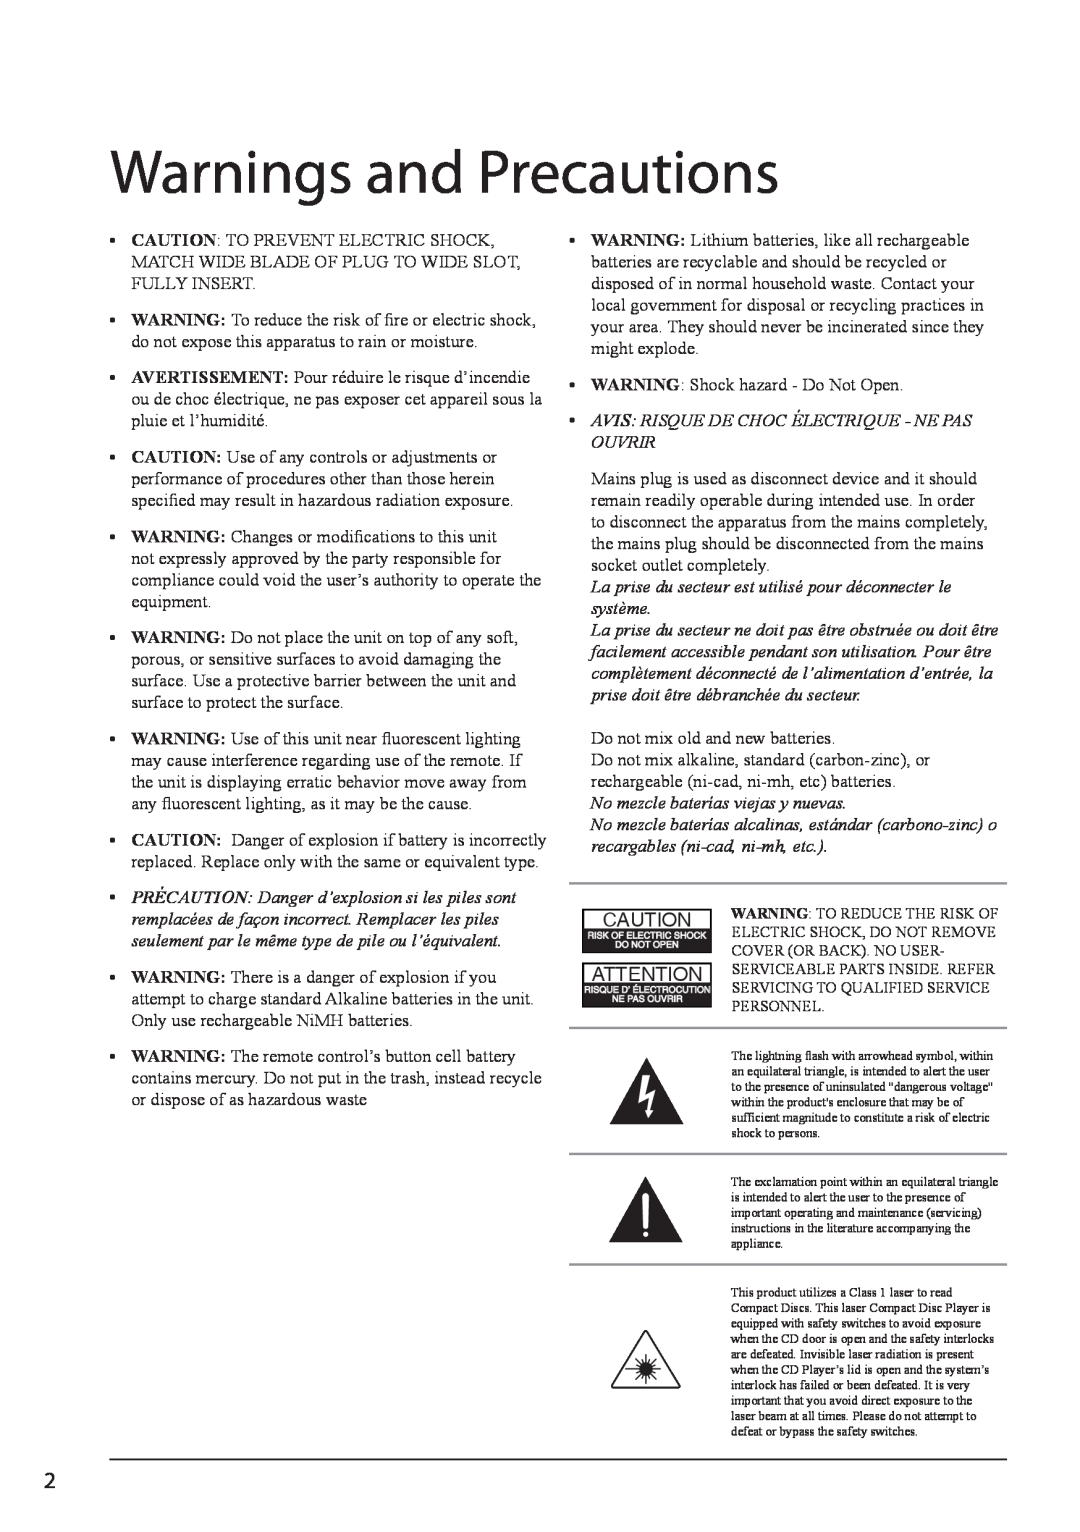 GPX PD701 Warnings and Precautions, Avis Risque De Choc Électrique - Ne Pas Ouvrir, No mezcle baterías viejas y nuevas 